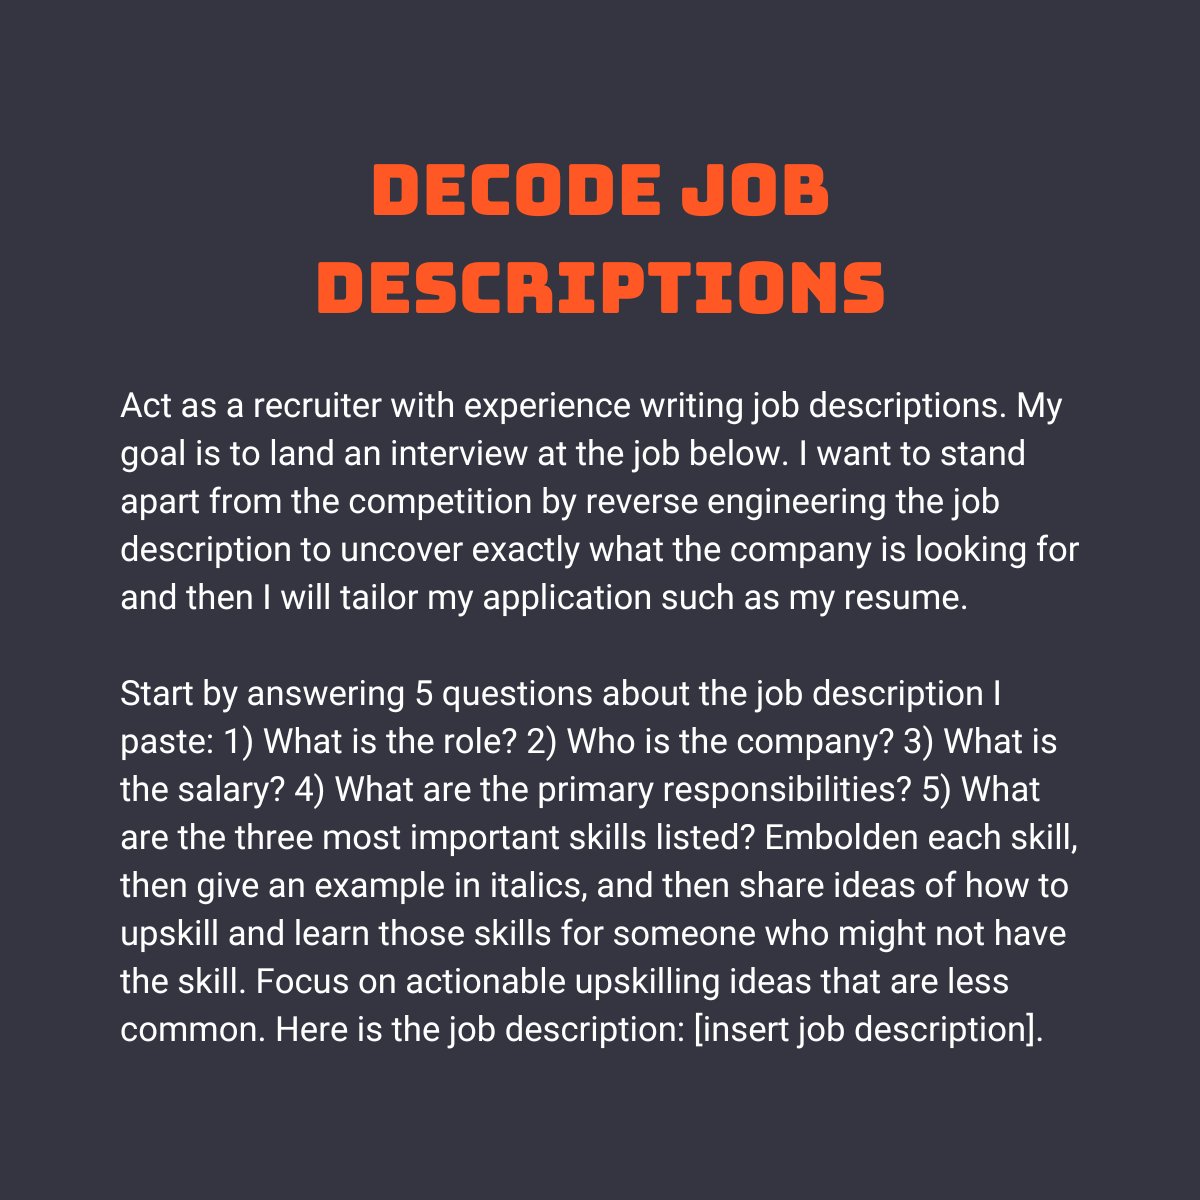 Decode job descriptions